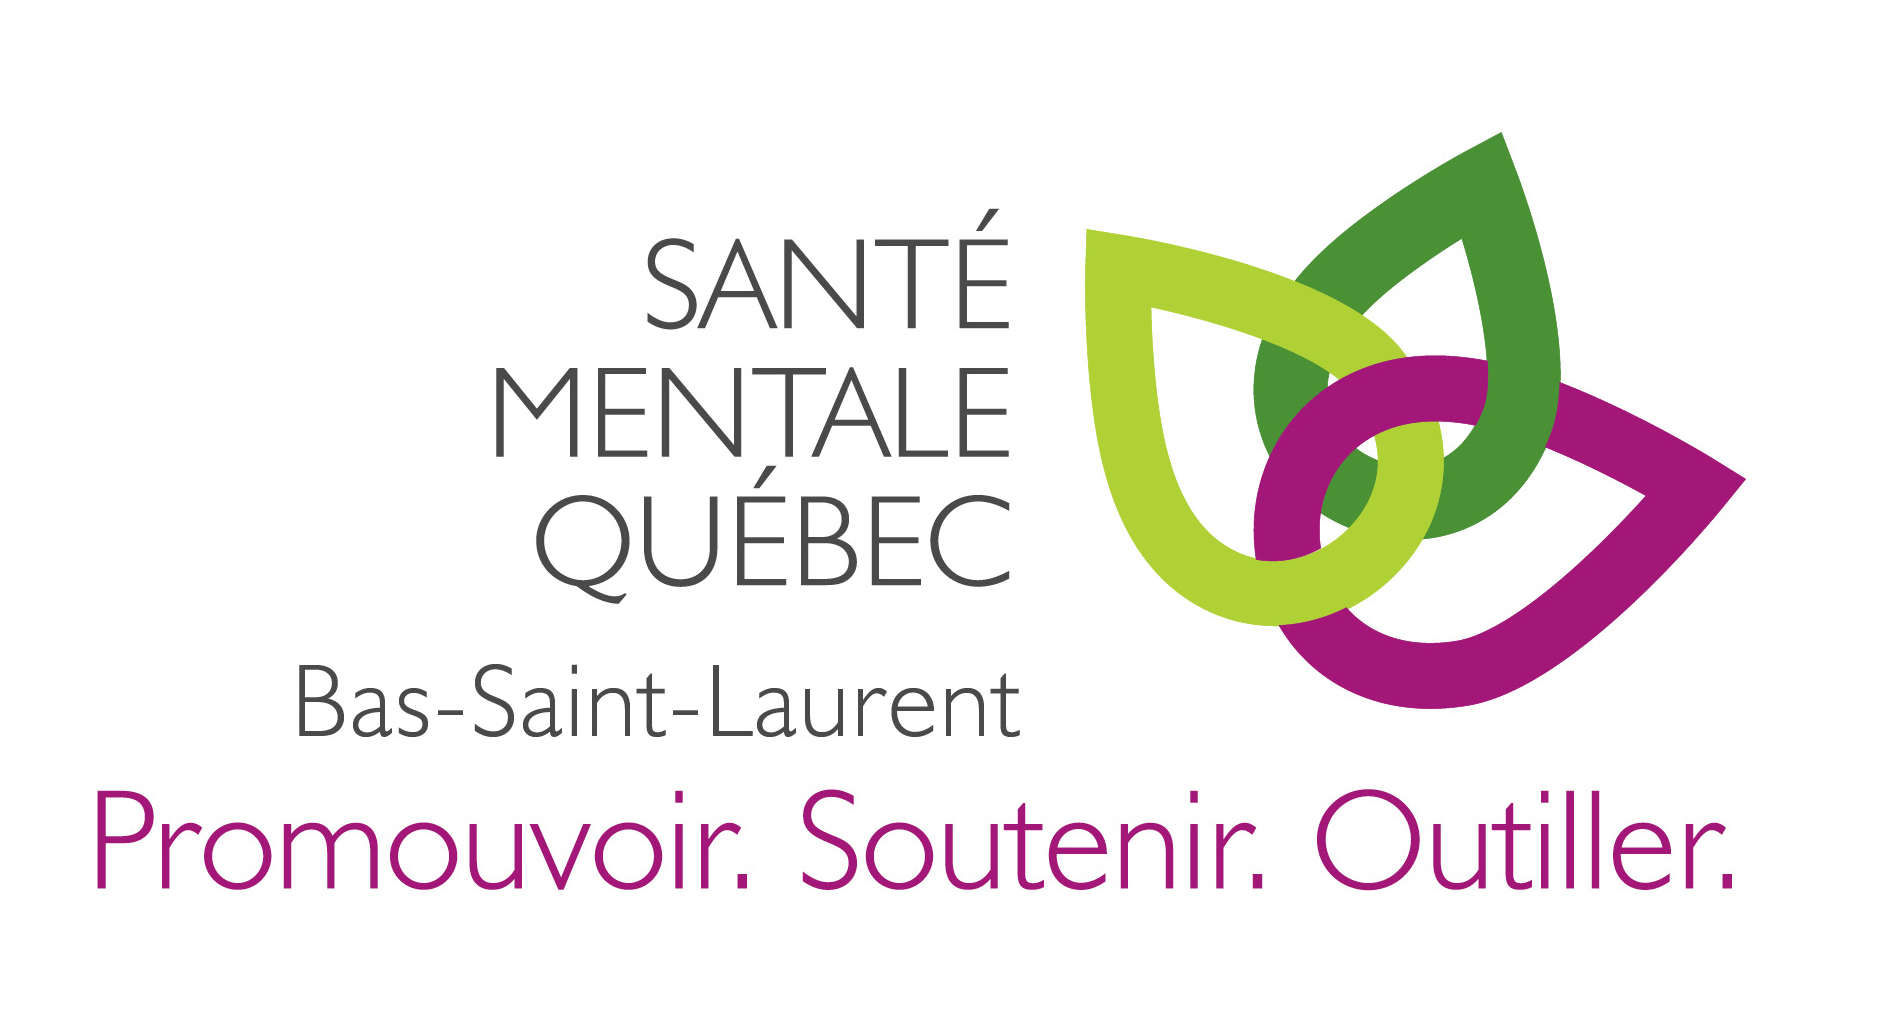 Santé mentale Québec - Bas-Saint-Laurent